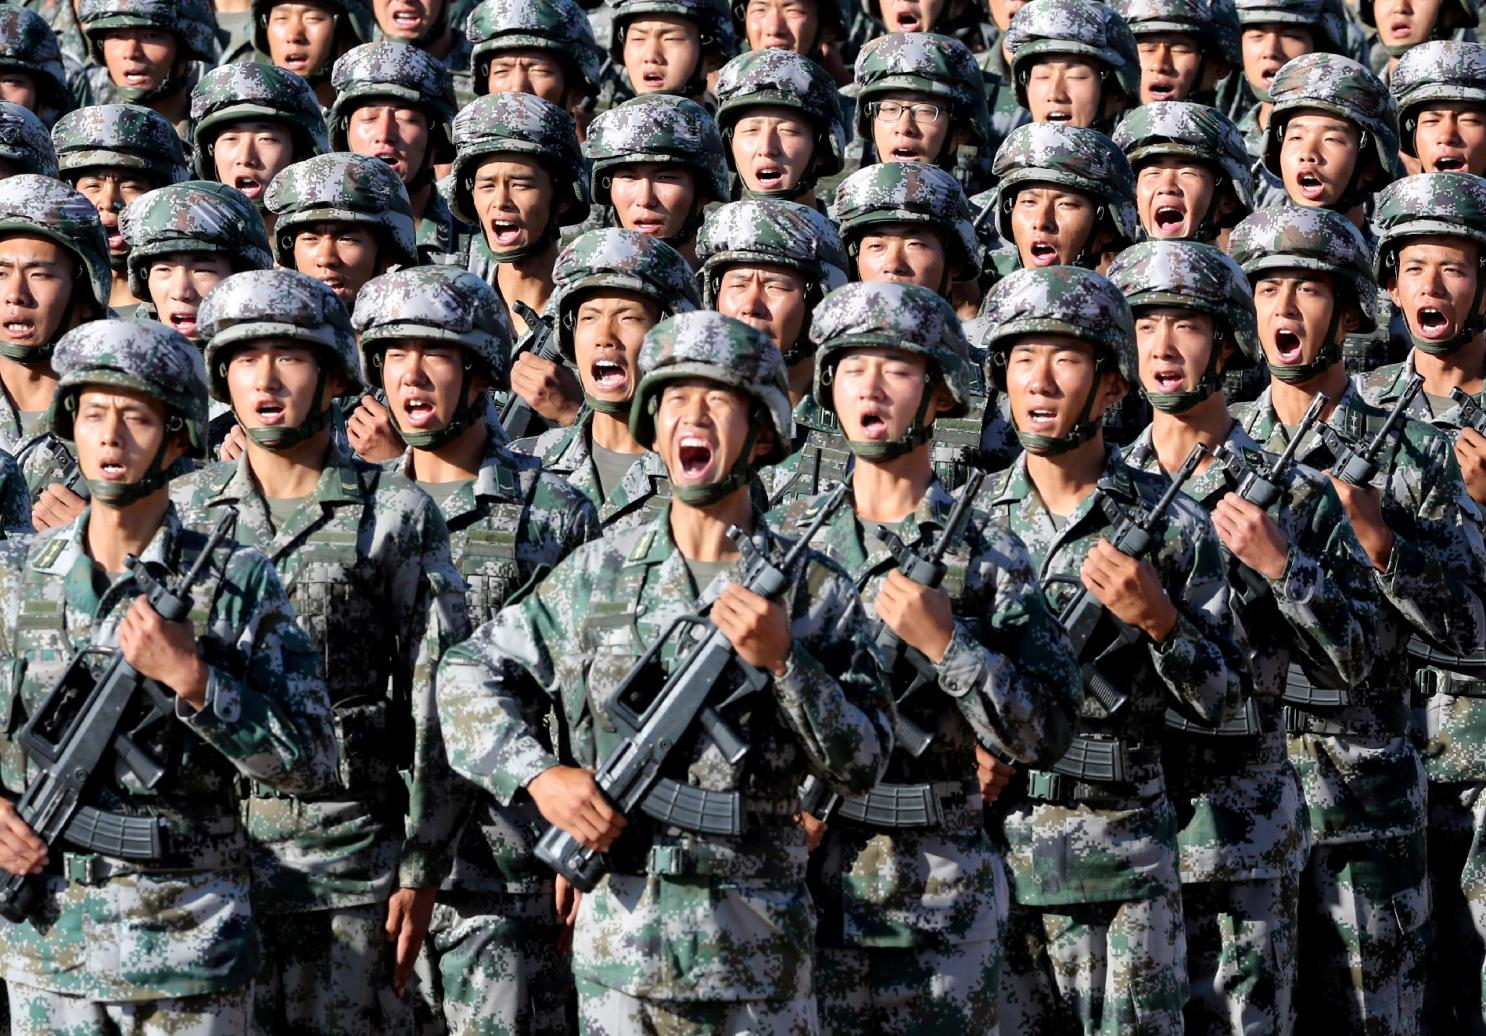 Κινεζικός Στρατός: Νέο βίντεο προσέλκυσης εθελοντών